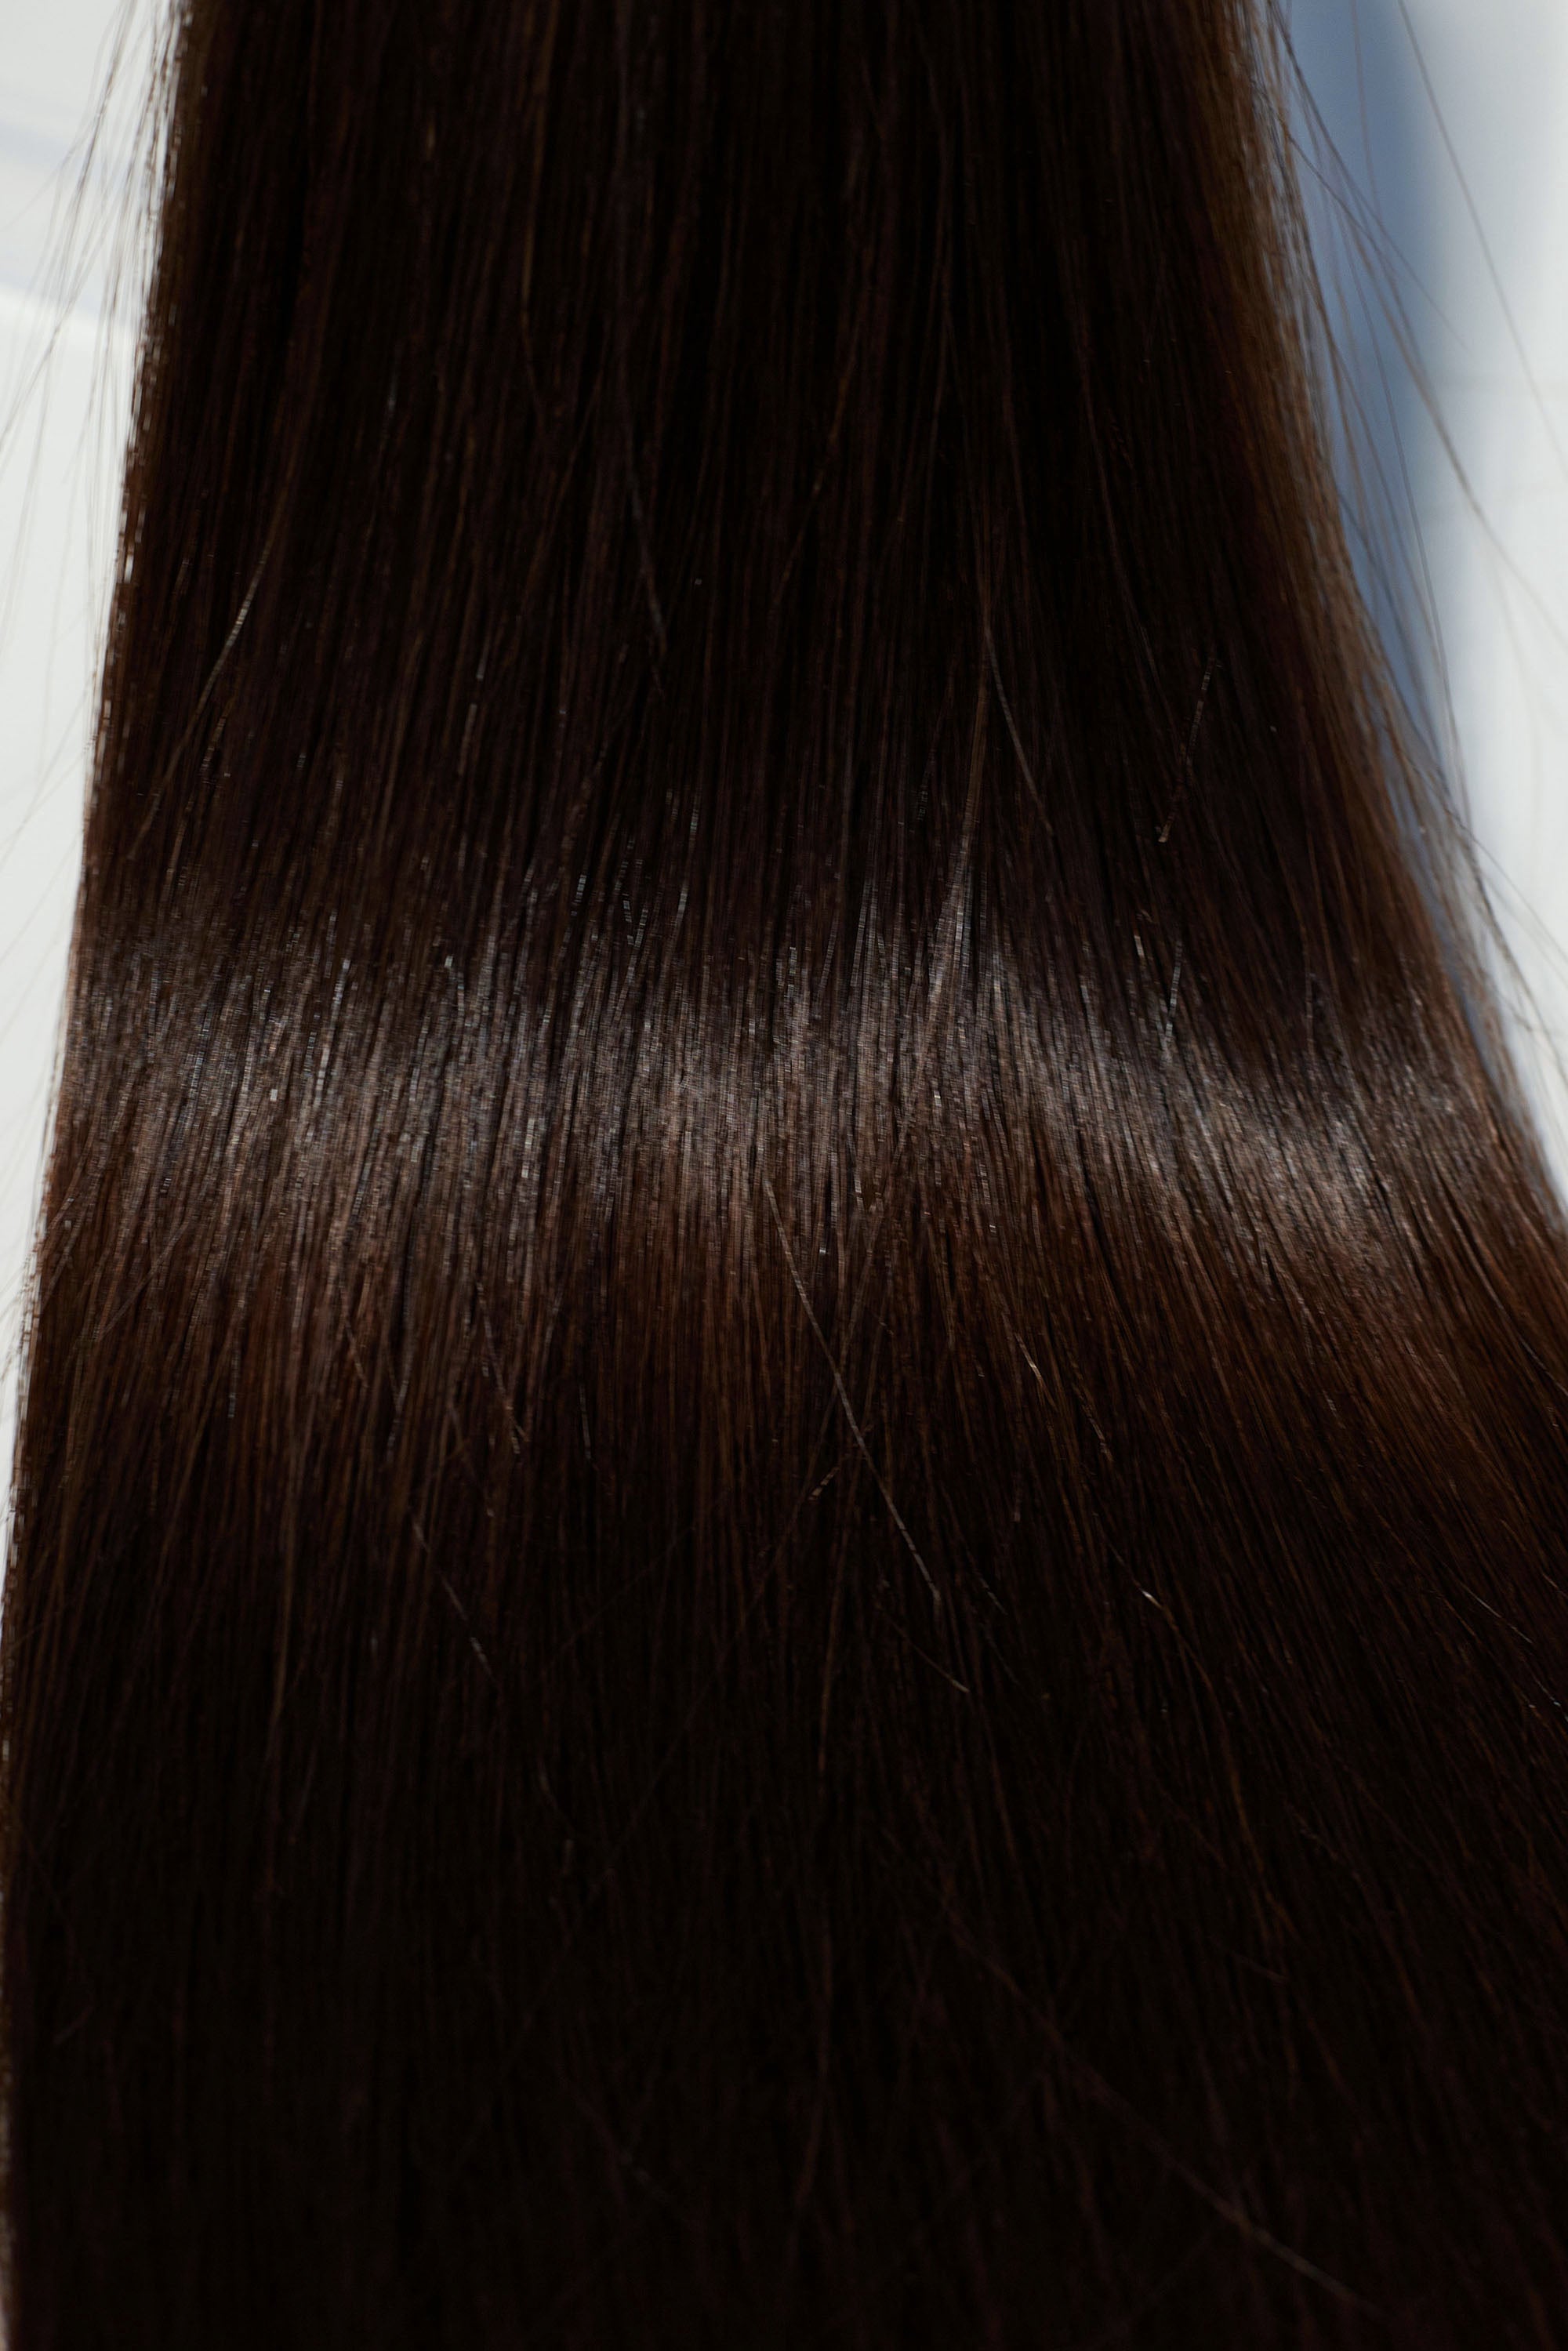 Behair professional Bulk hair "Premium" 24" (60cm) Natural Straight Dark Coffee Brown #2 - 25g hair extensions